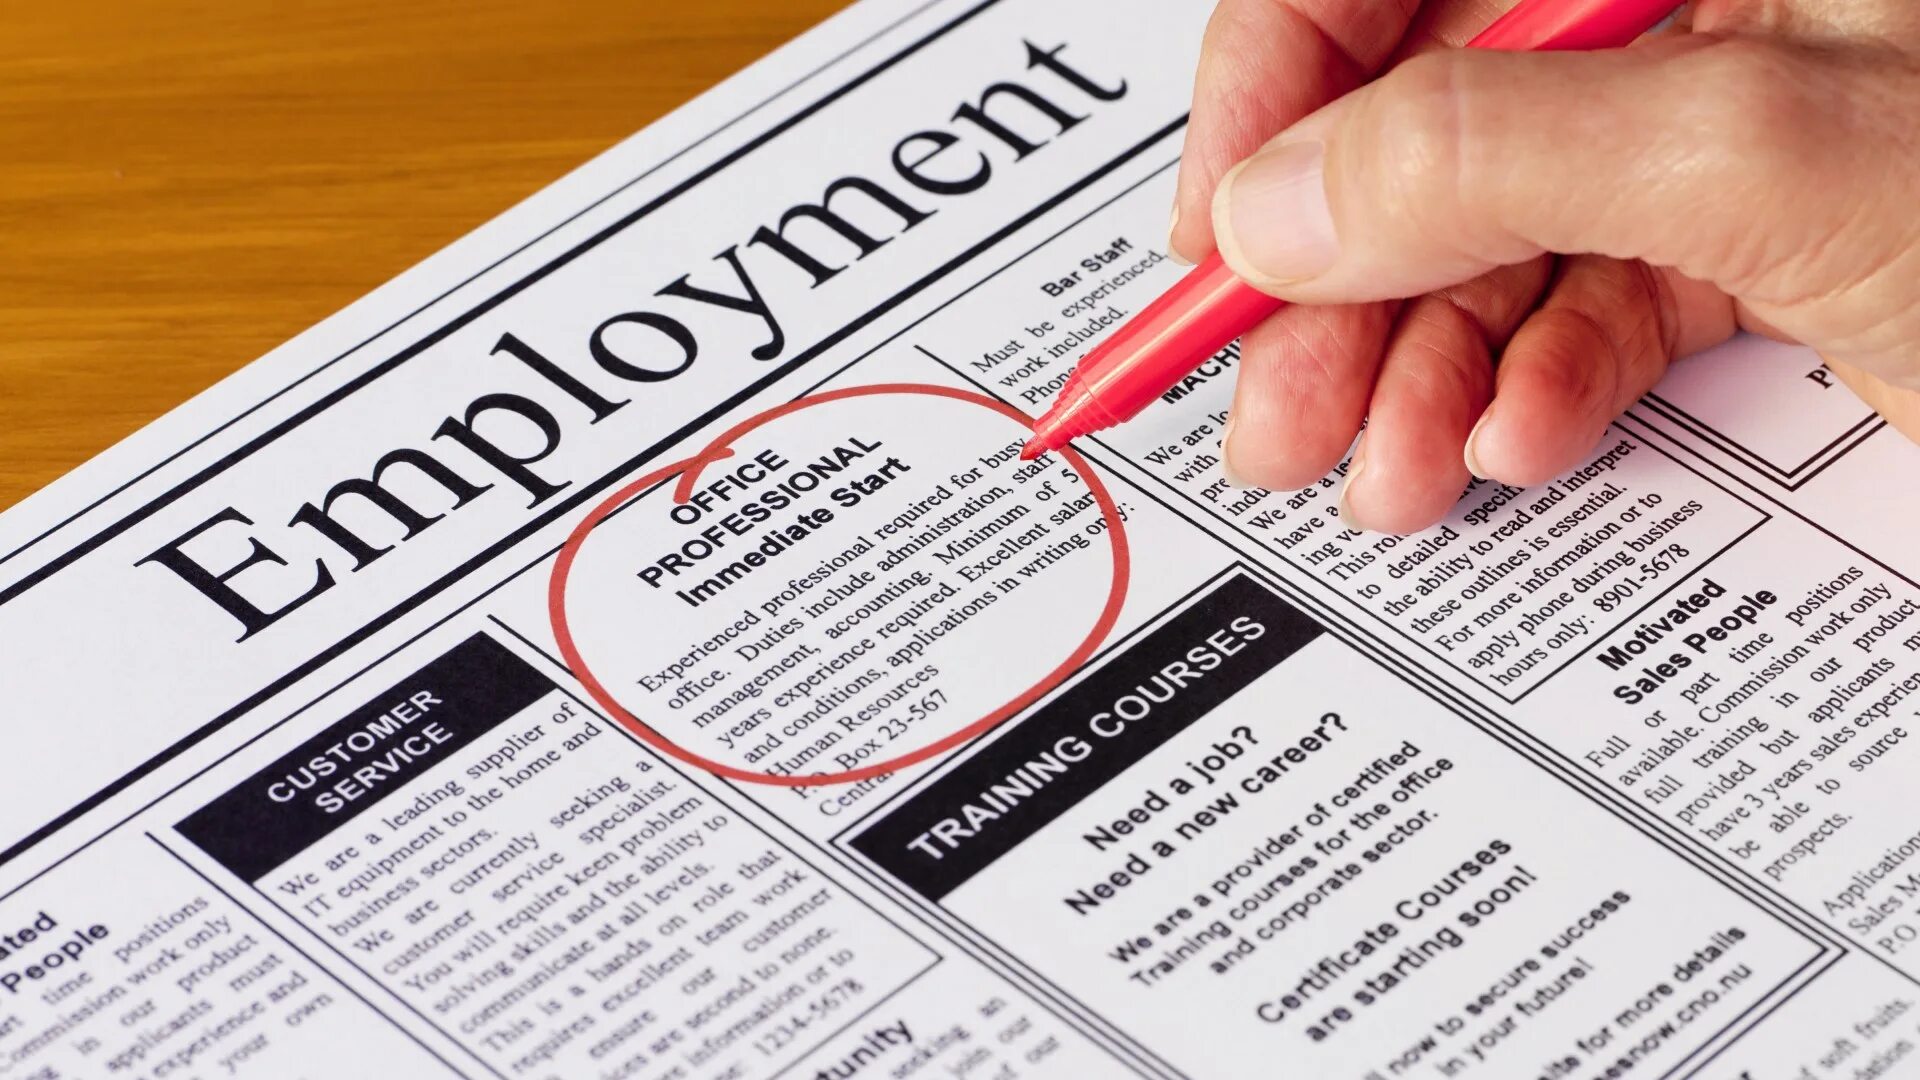 Безработица картинки. Поиск работы на английском языке. Безработица на английском. Поиск работы. Найти работу на английском